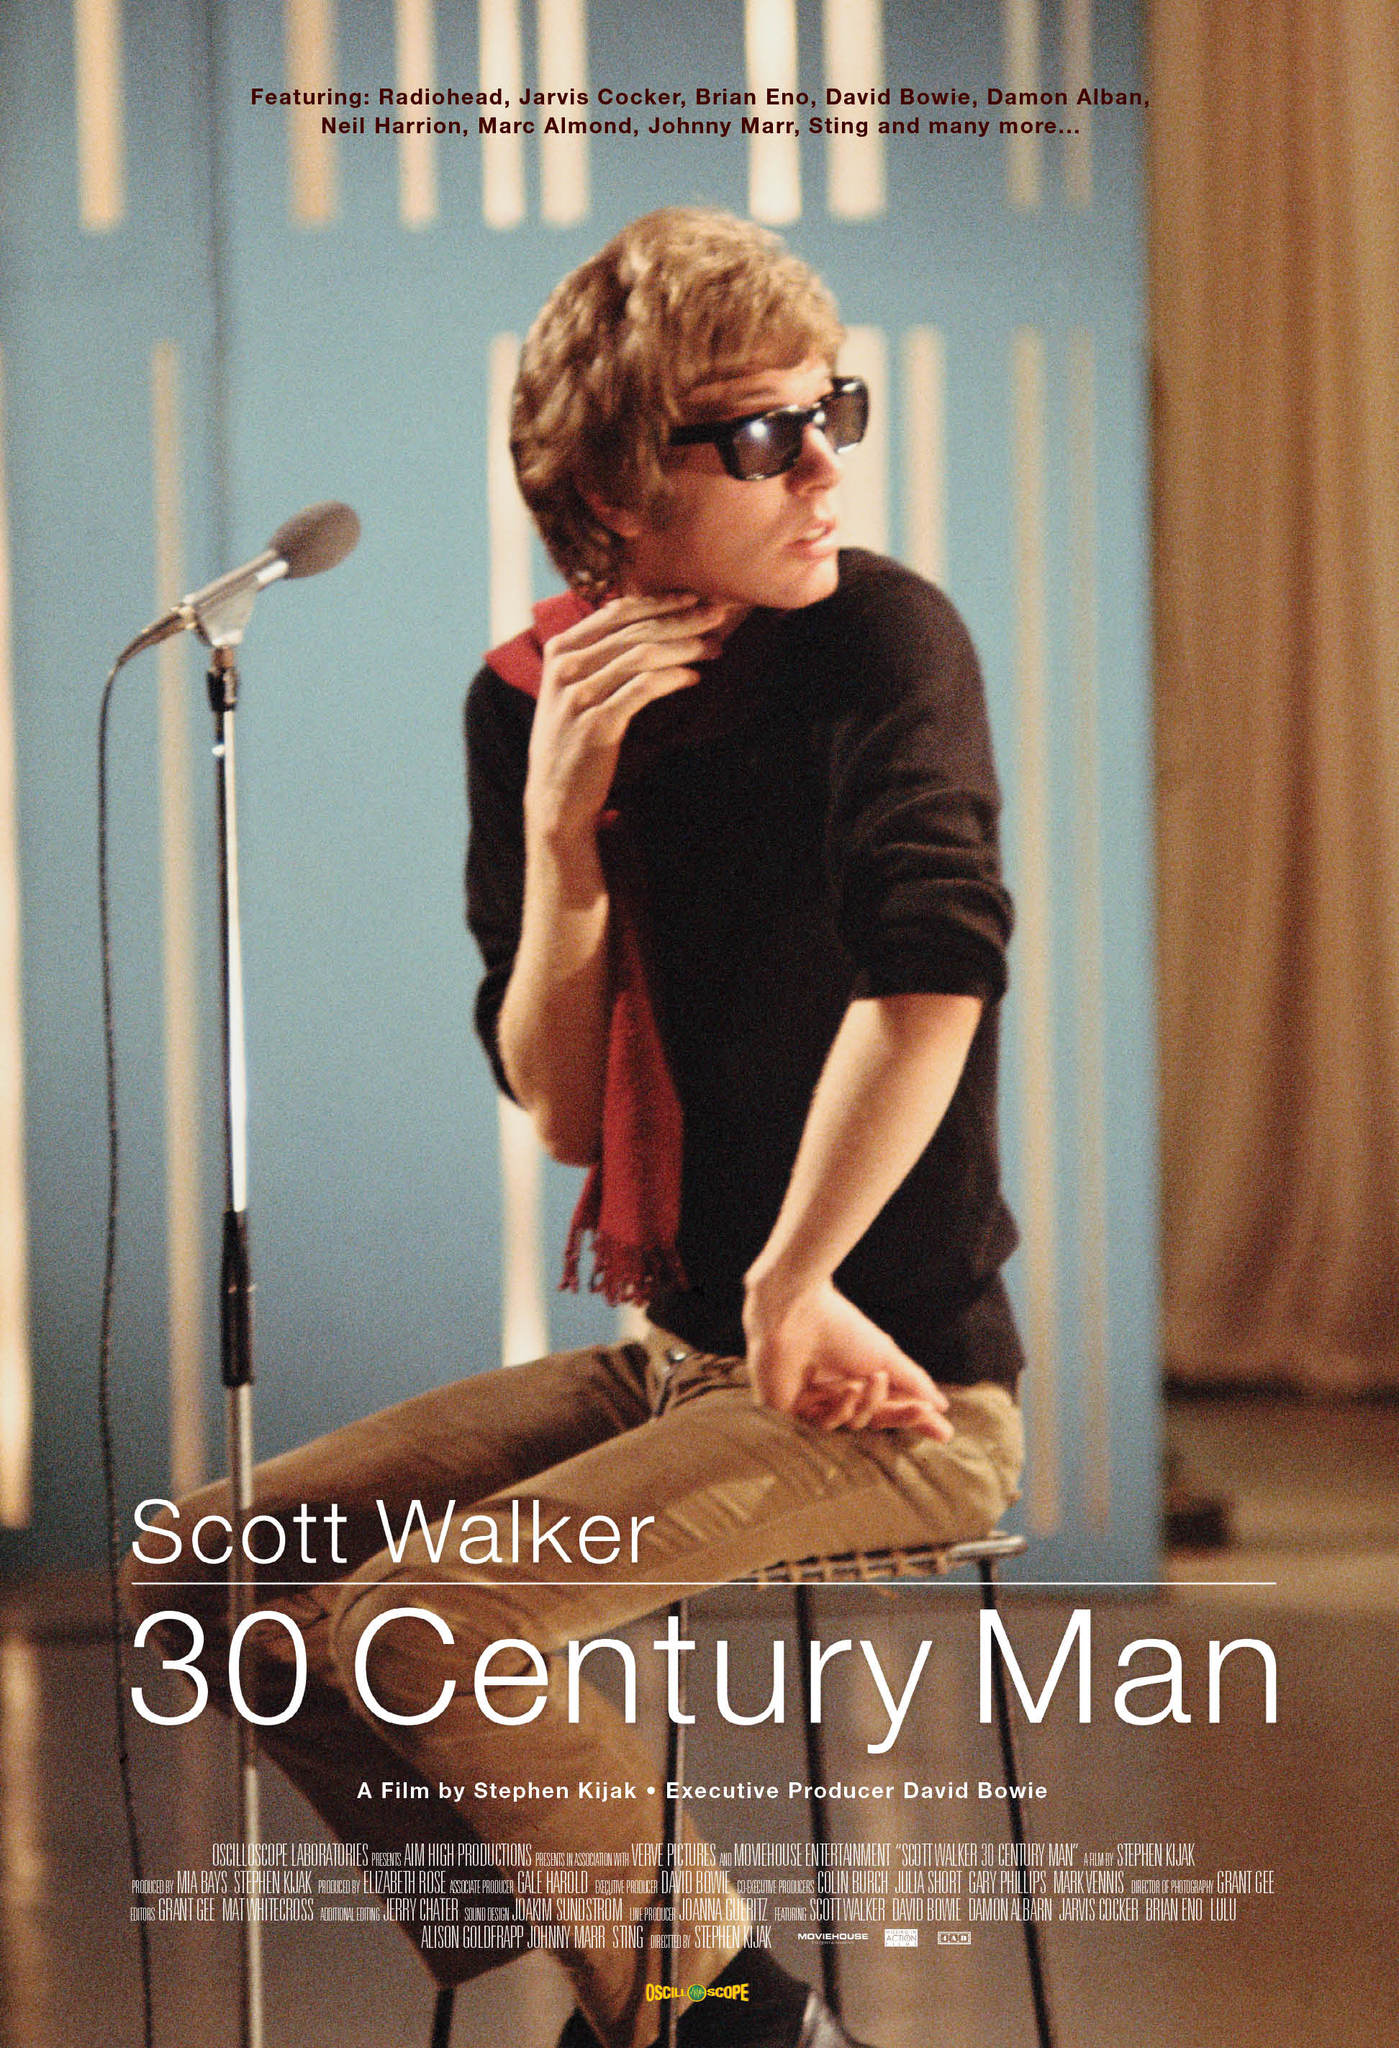 Scott Walker: 30 Century Man (2006) Screenshot 1